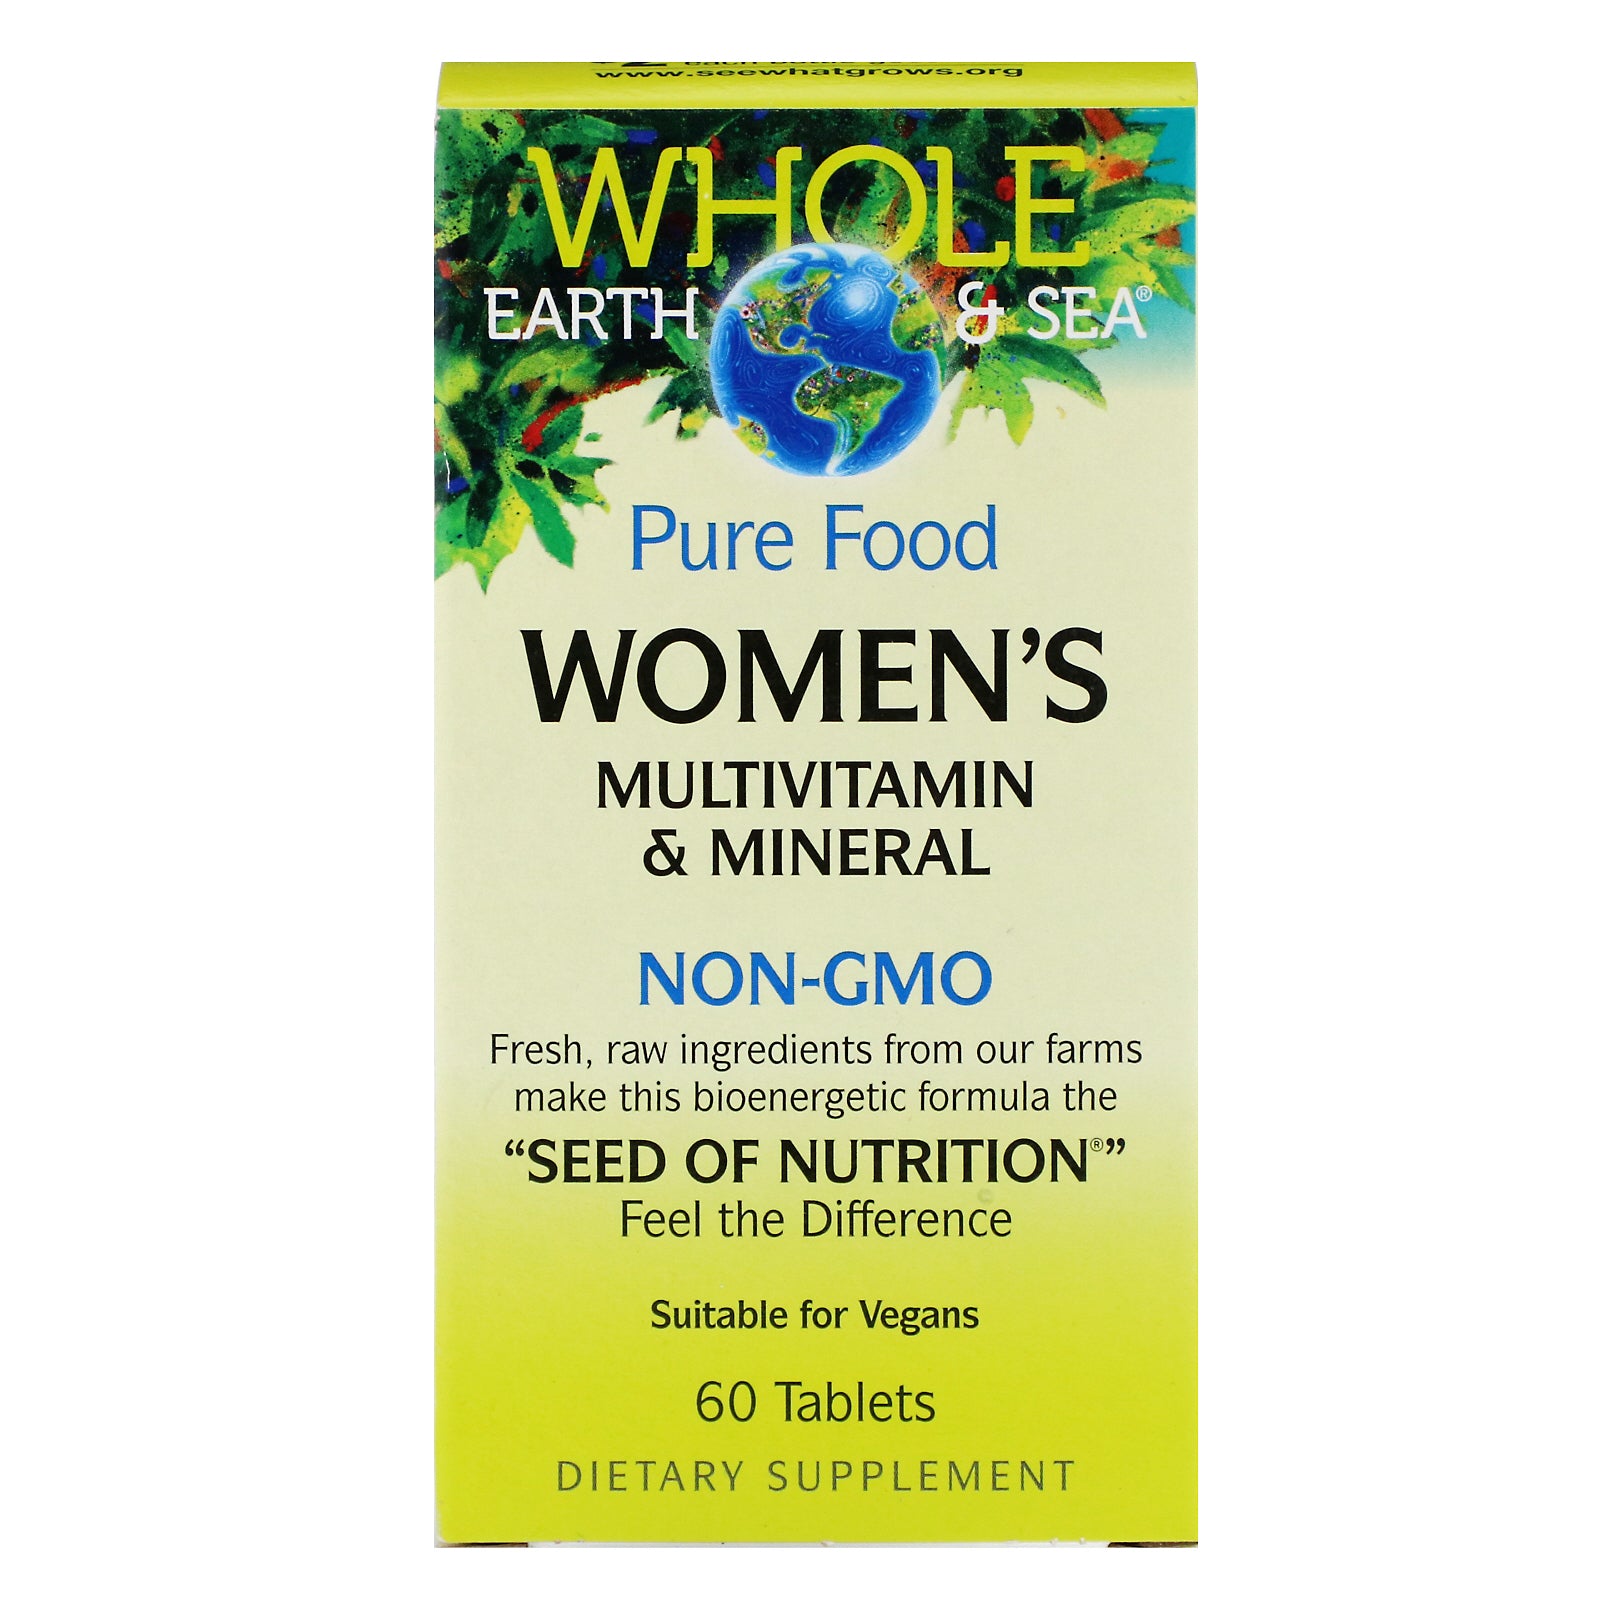 Whole Earth & Sea Women's Multivitamin & Mineral